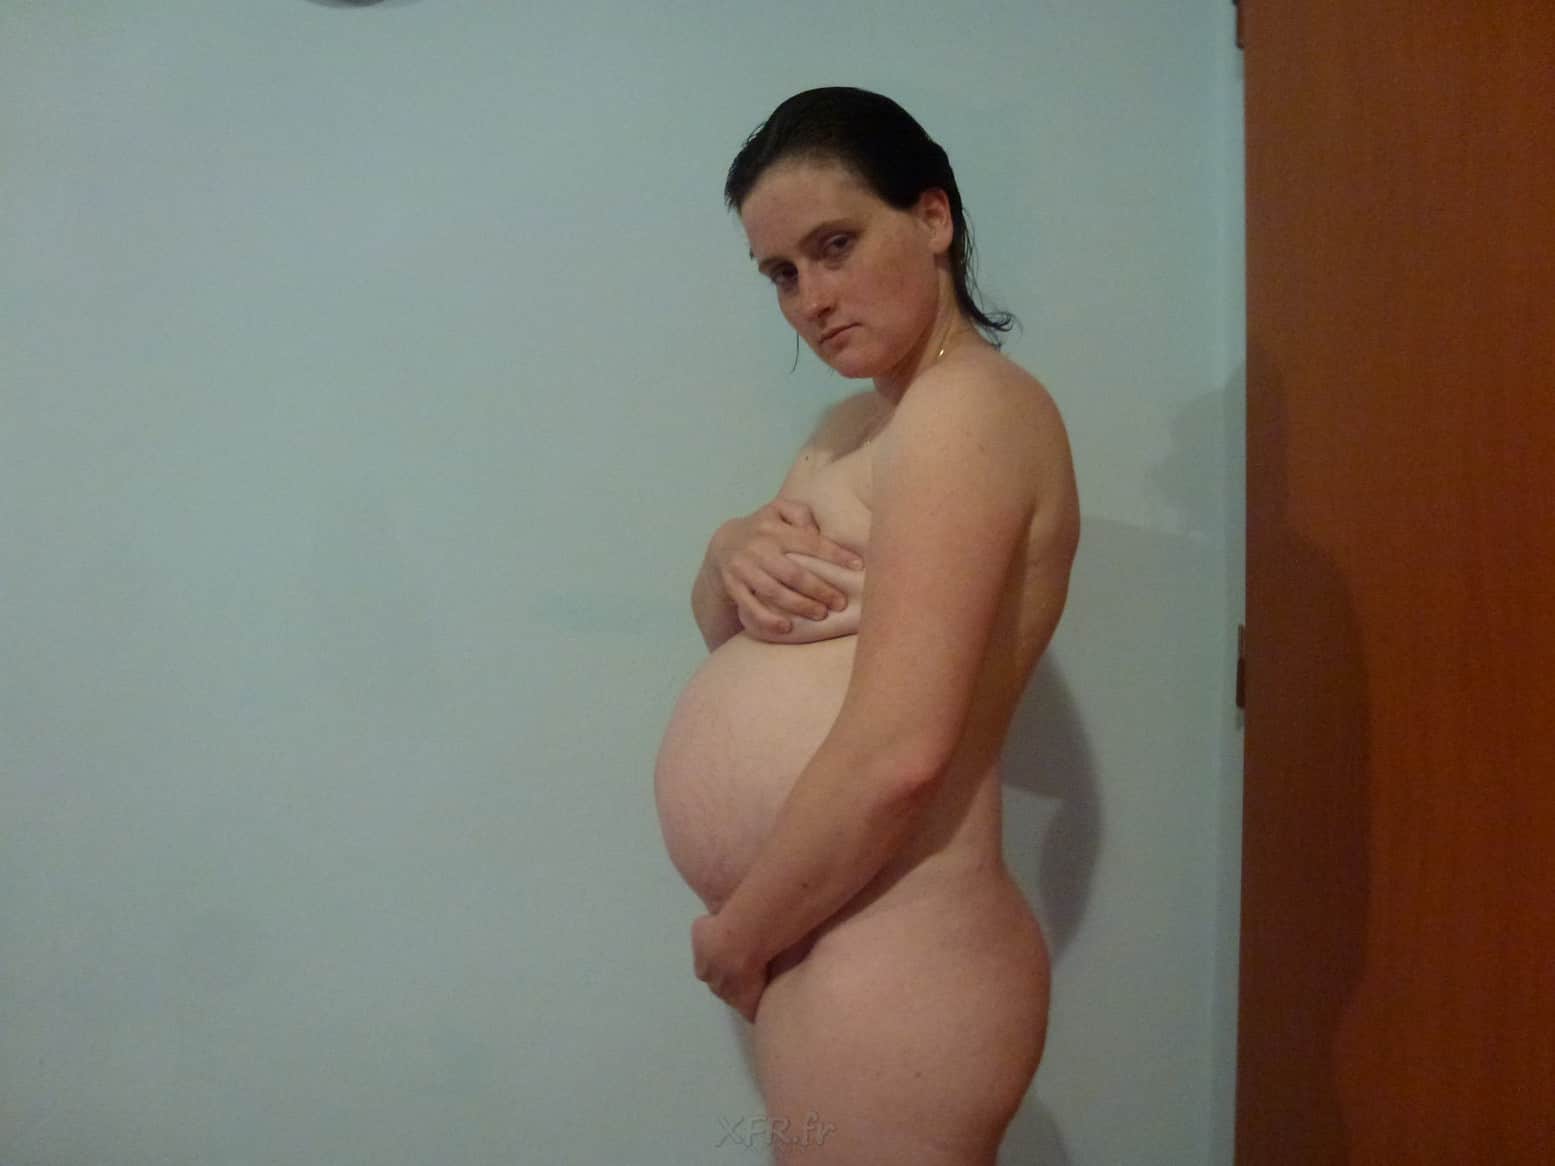 Une femme enceinte partage ses photos de grossesse